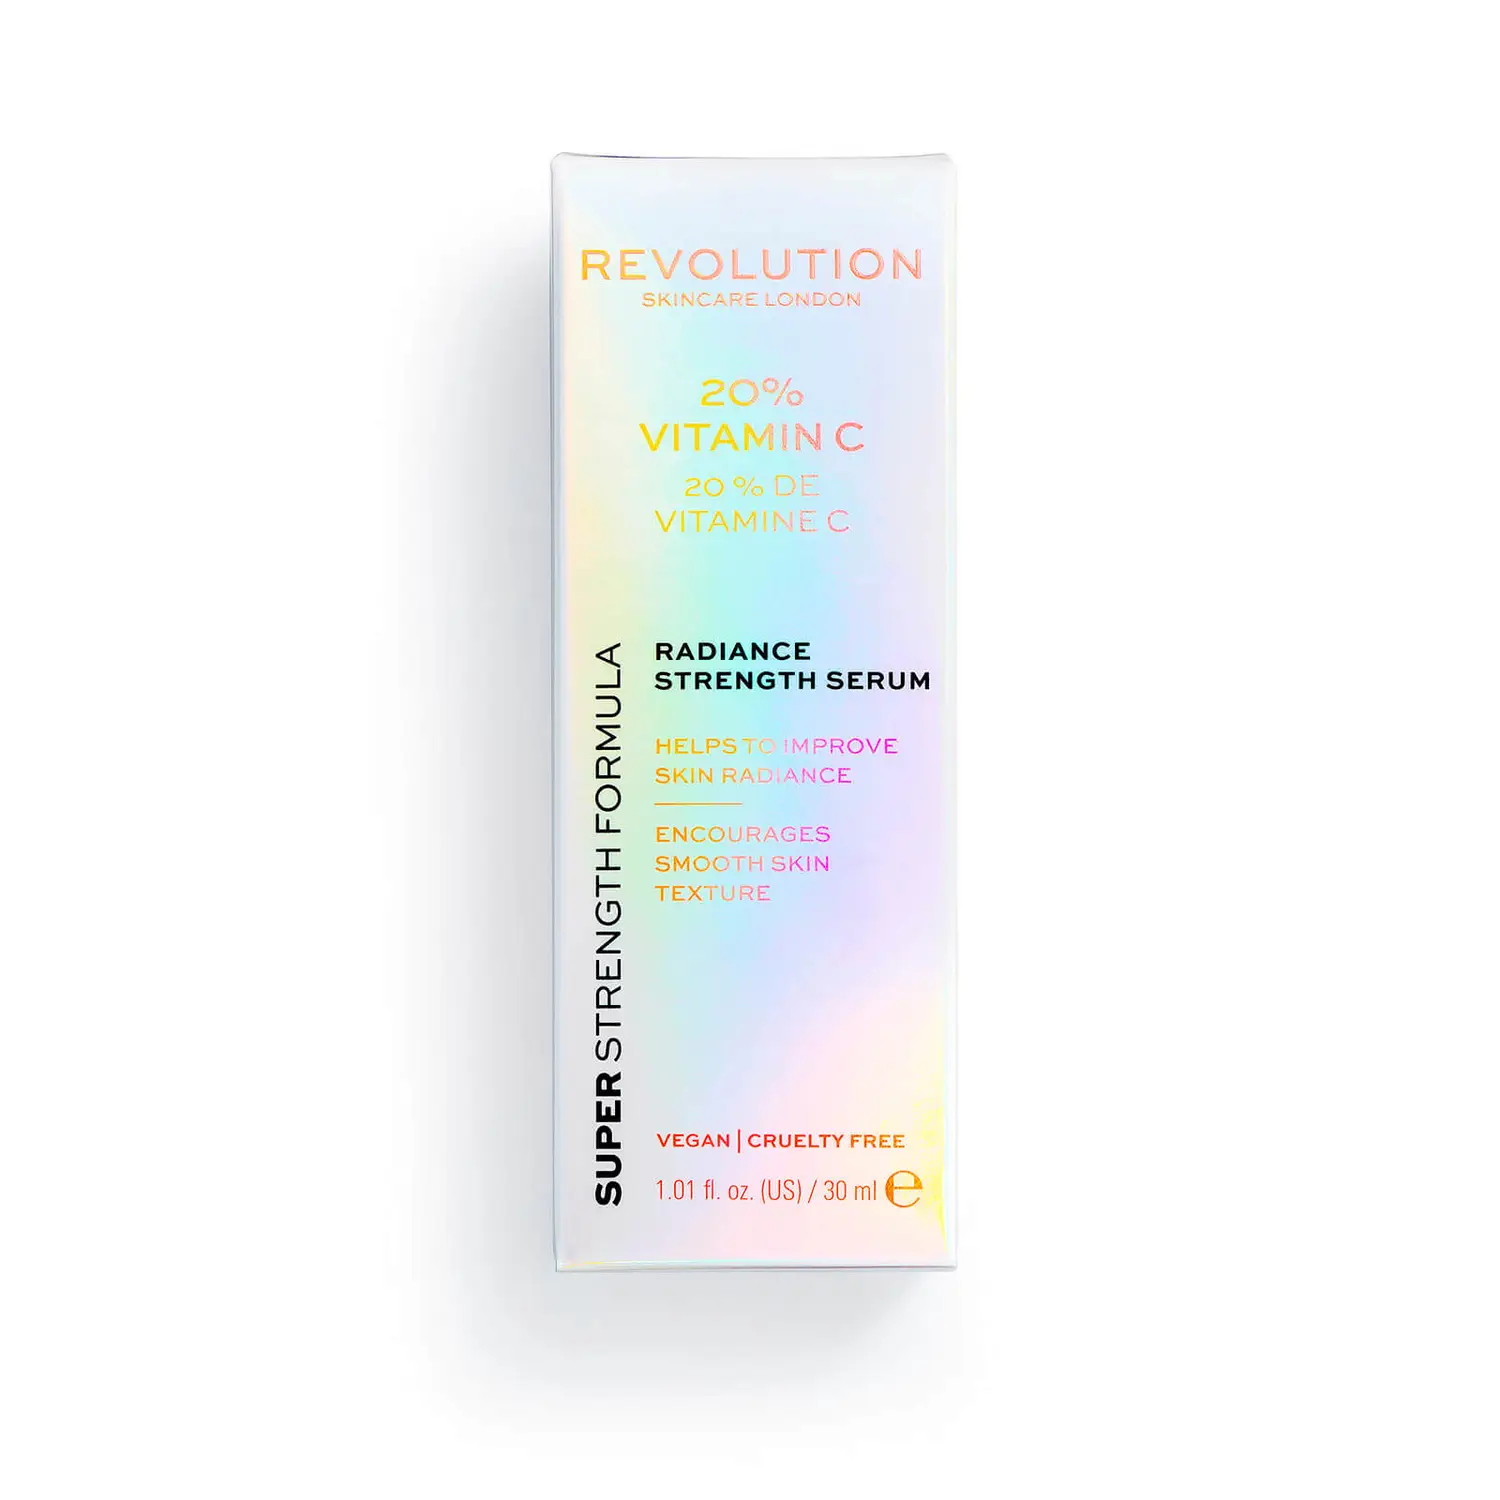 Revolution Skincare 20% Сыворотка с витамином С для сияния кожи сыворотка выравнивающая revolution skincare 20% vitamin c radiance strength 30 мл